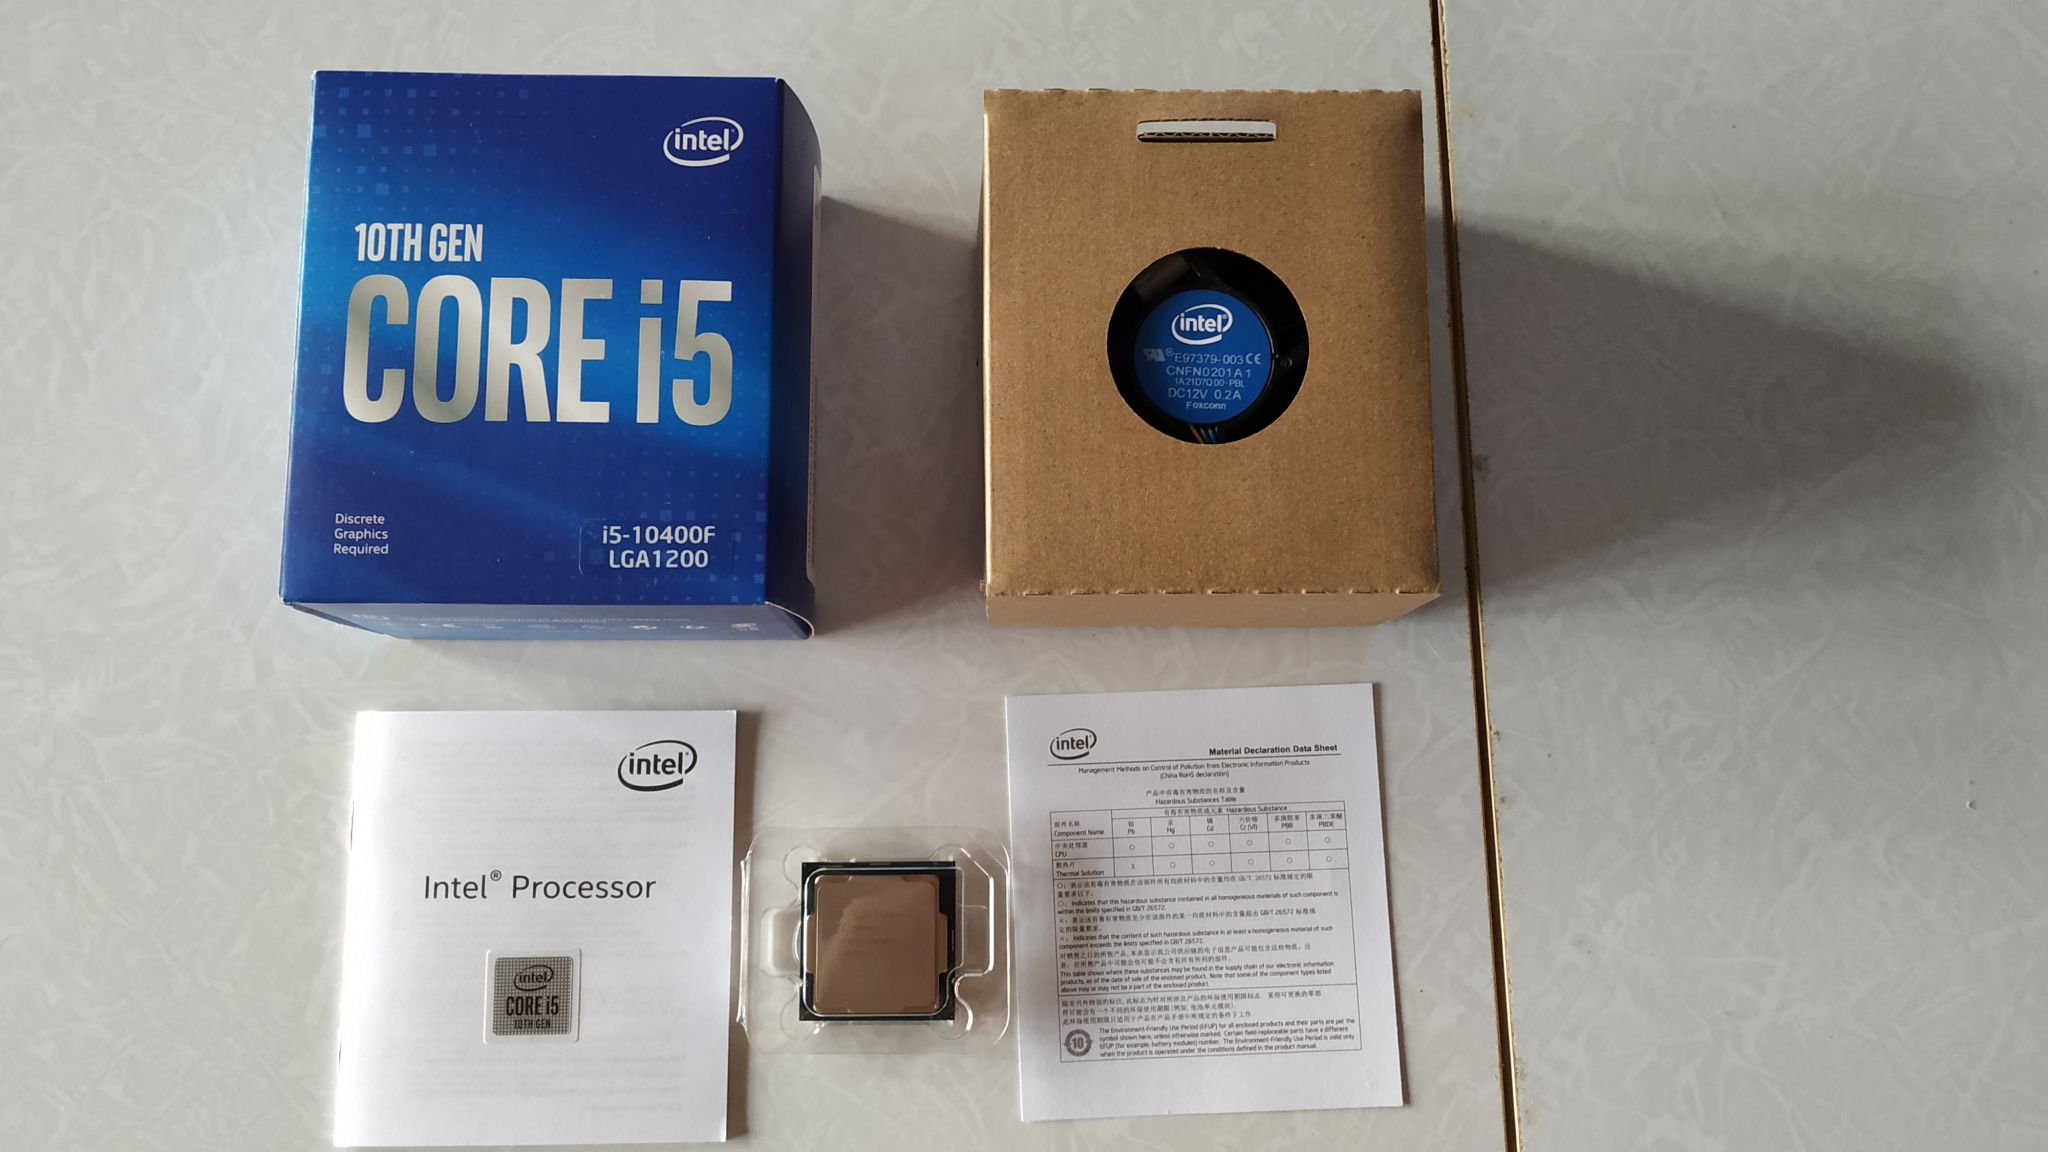 12600kf характеристики. Intel Core i5-10400f. Процессор Intel Core i5-10400f Box. Процессор Intel Core i5 Comet Lake i5-10400f OEM. Intel Core i5 10400, LGA 1200, OEM.